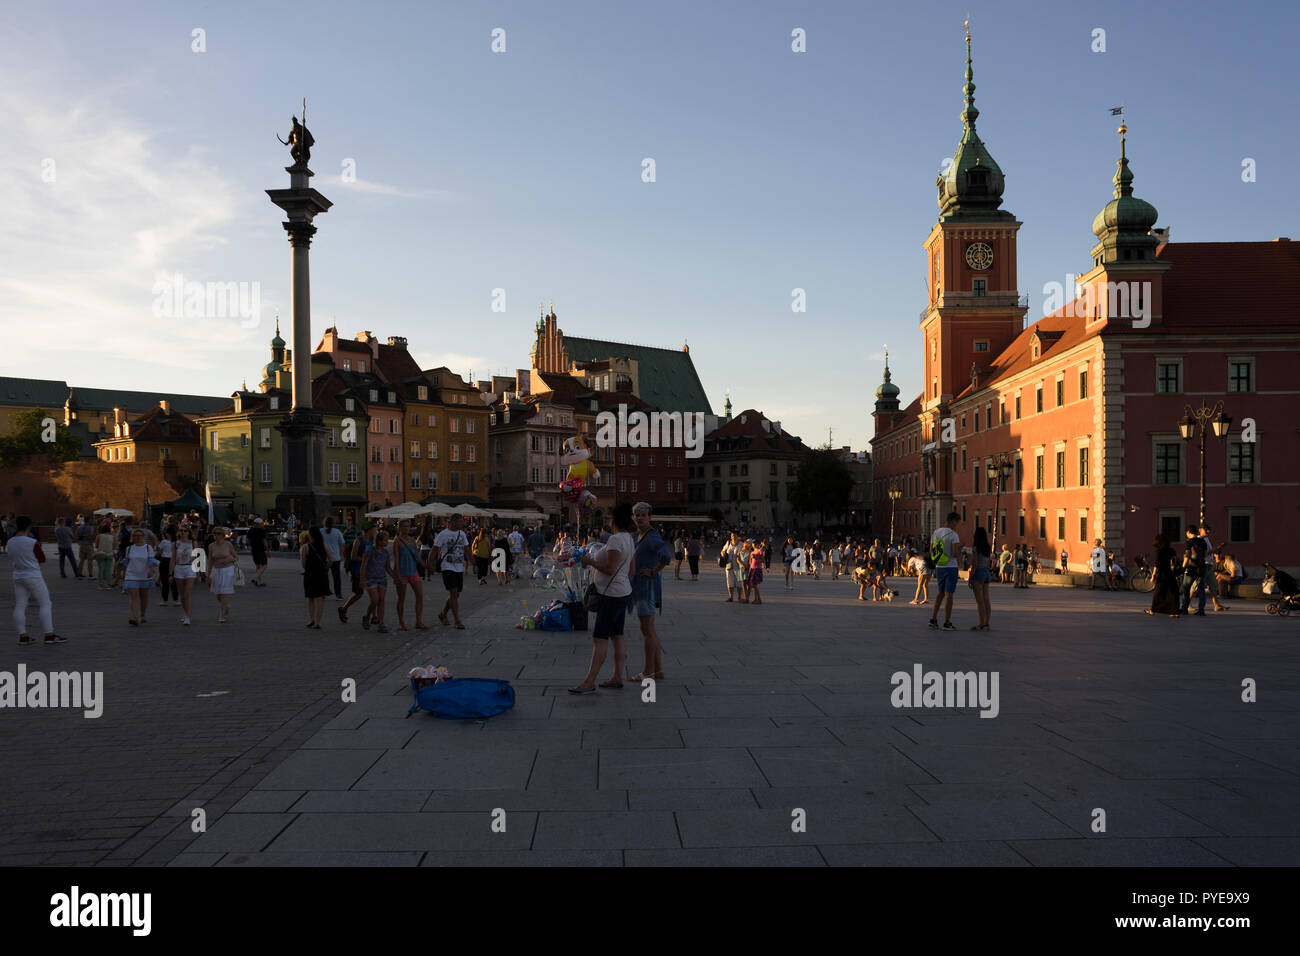 Der Schlossplatz in Warschau ist ein Treffpunkt für Touristen und Einheimische, die sich hier versammeln, Straßenkünstler und Konzerte zu sehen, Polen 2018. Stockfoto